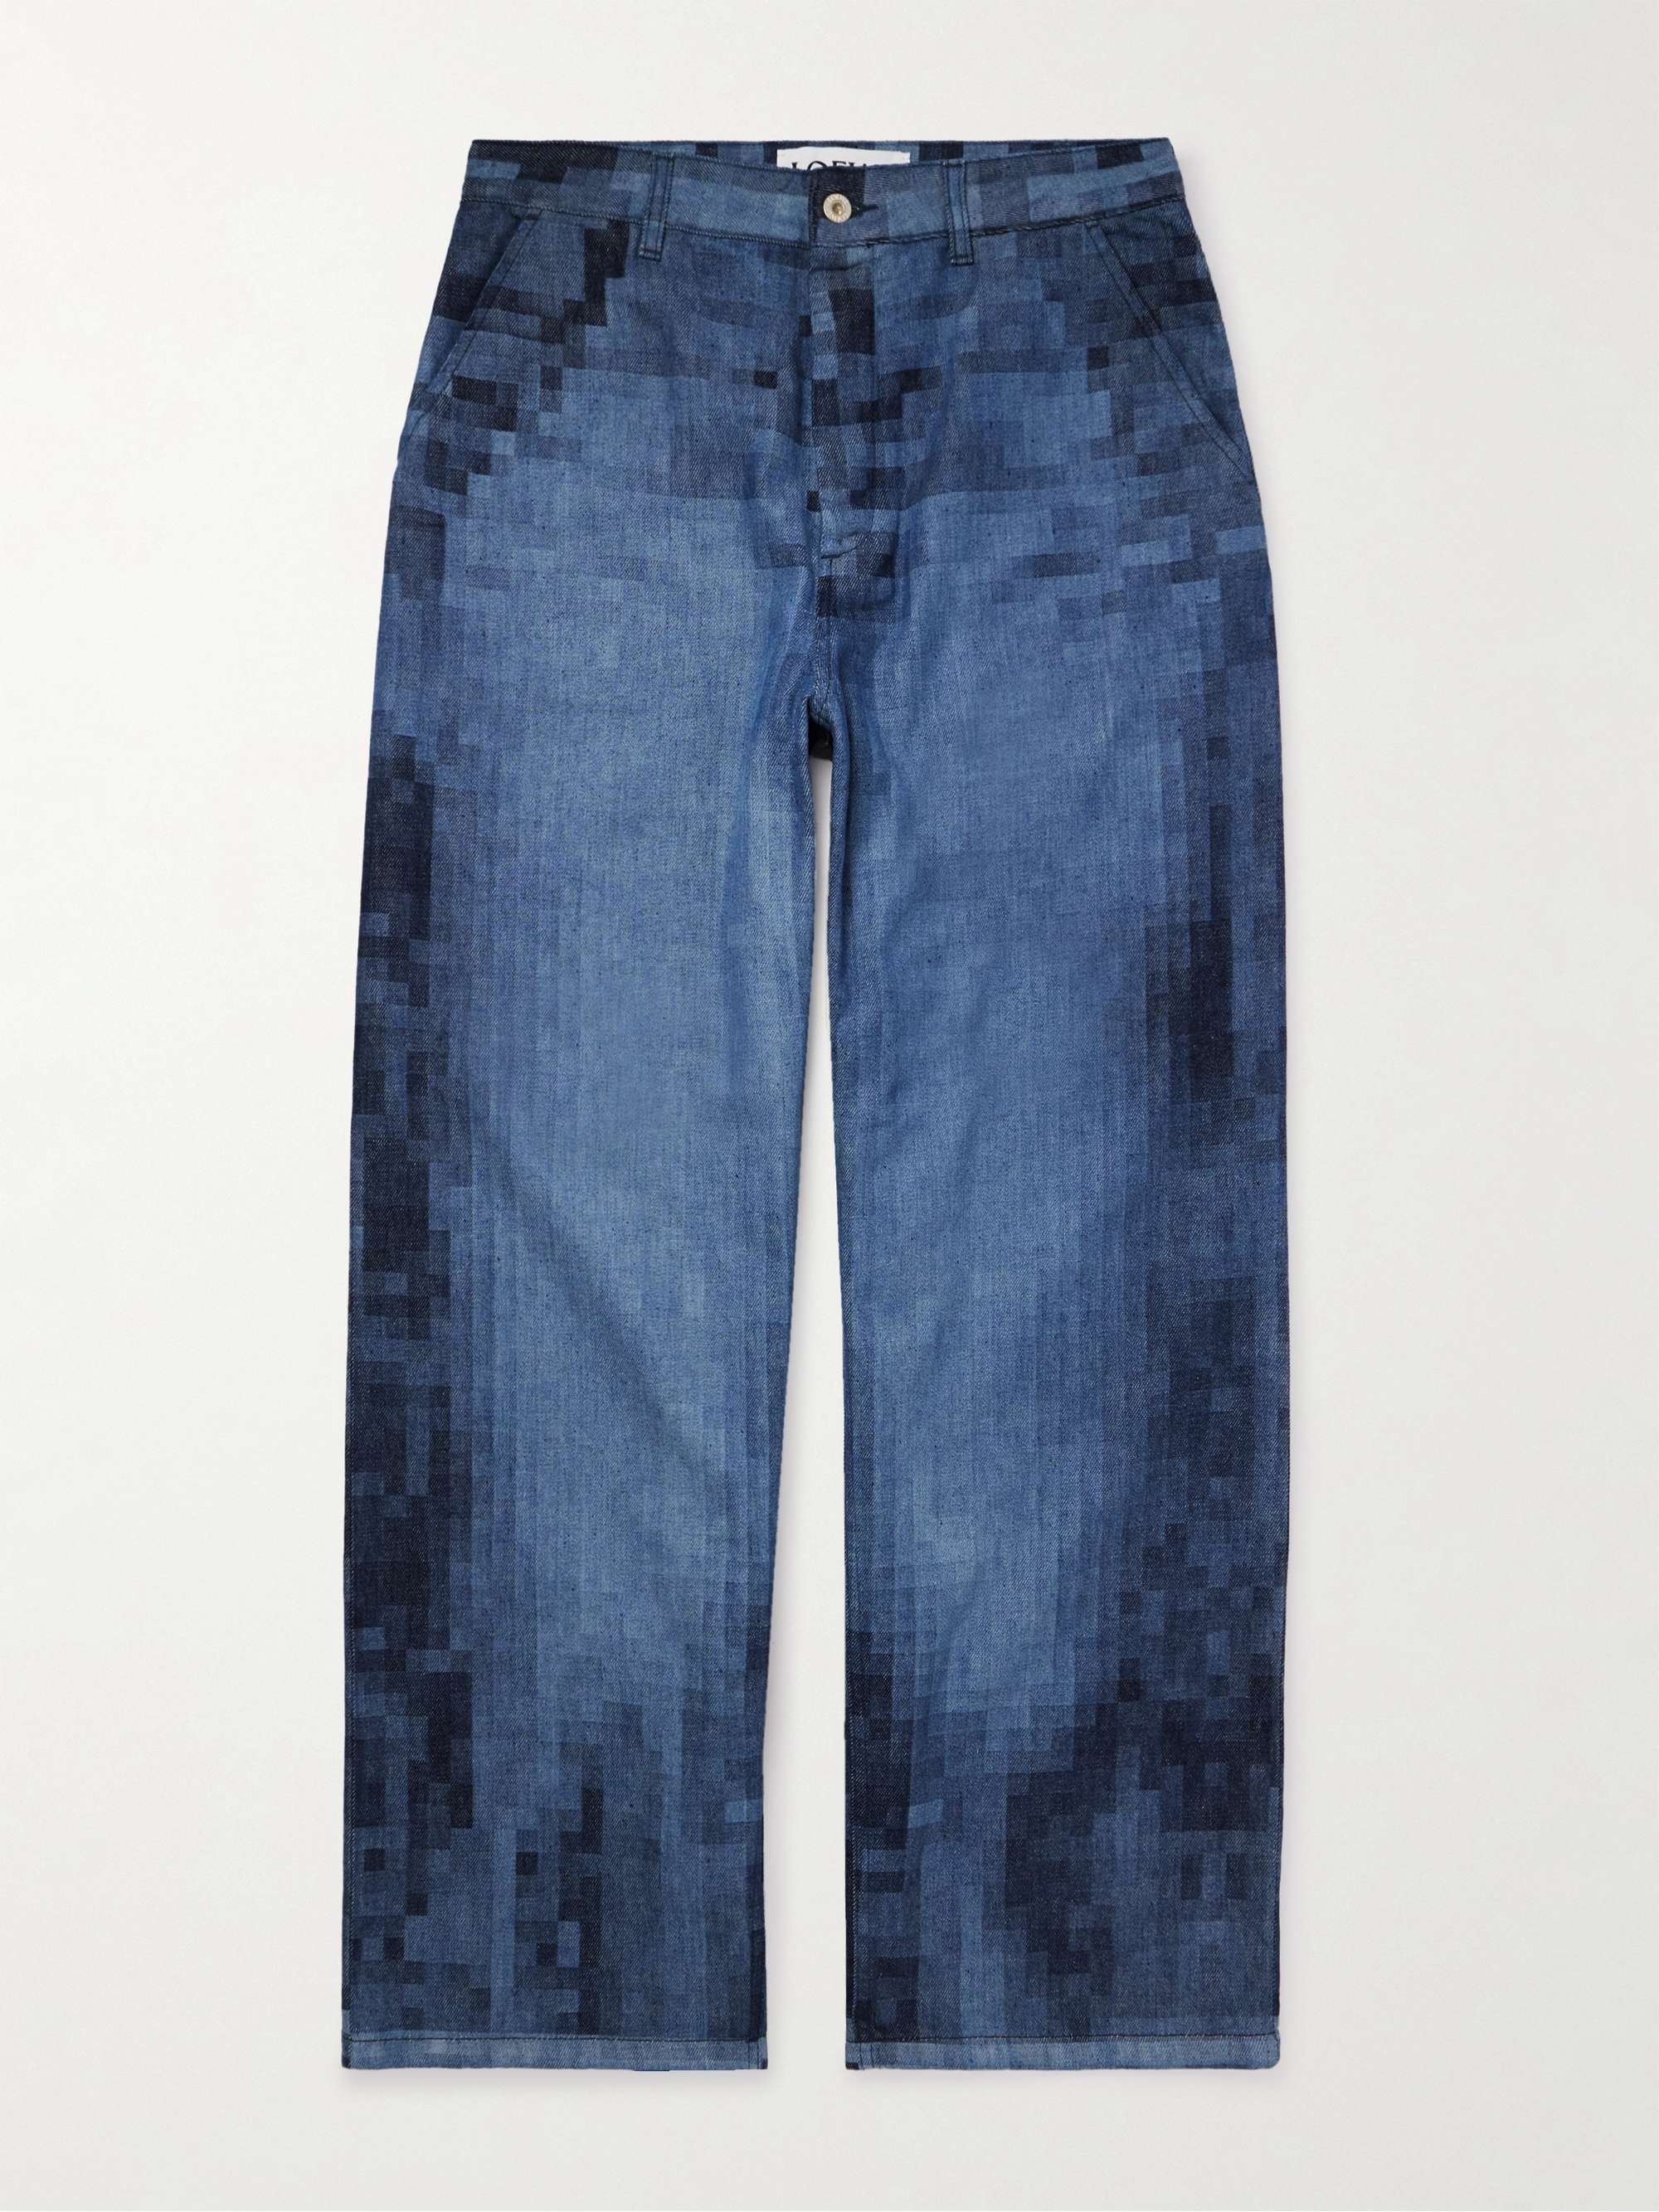 LOEWE Pixelated Straight-Leg Printed Jeans for Men | MR PORTER